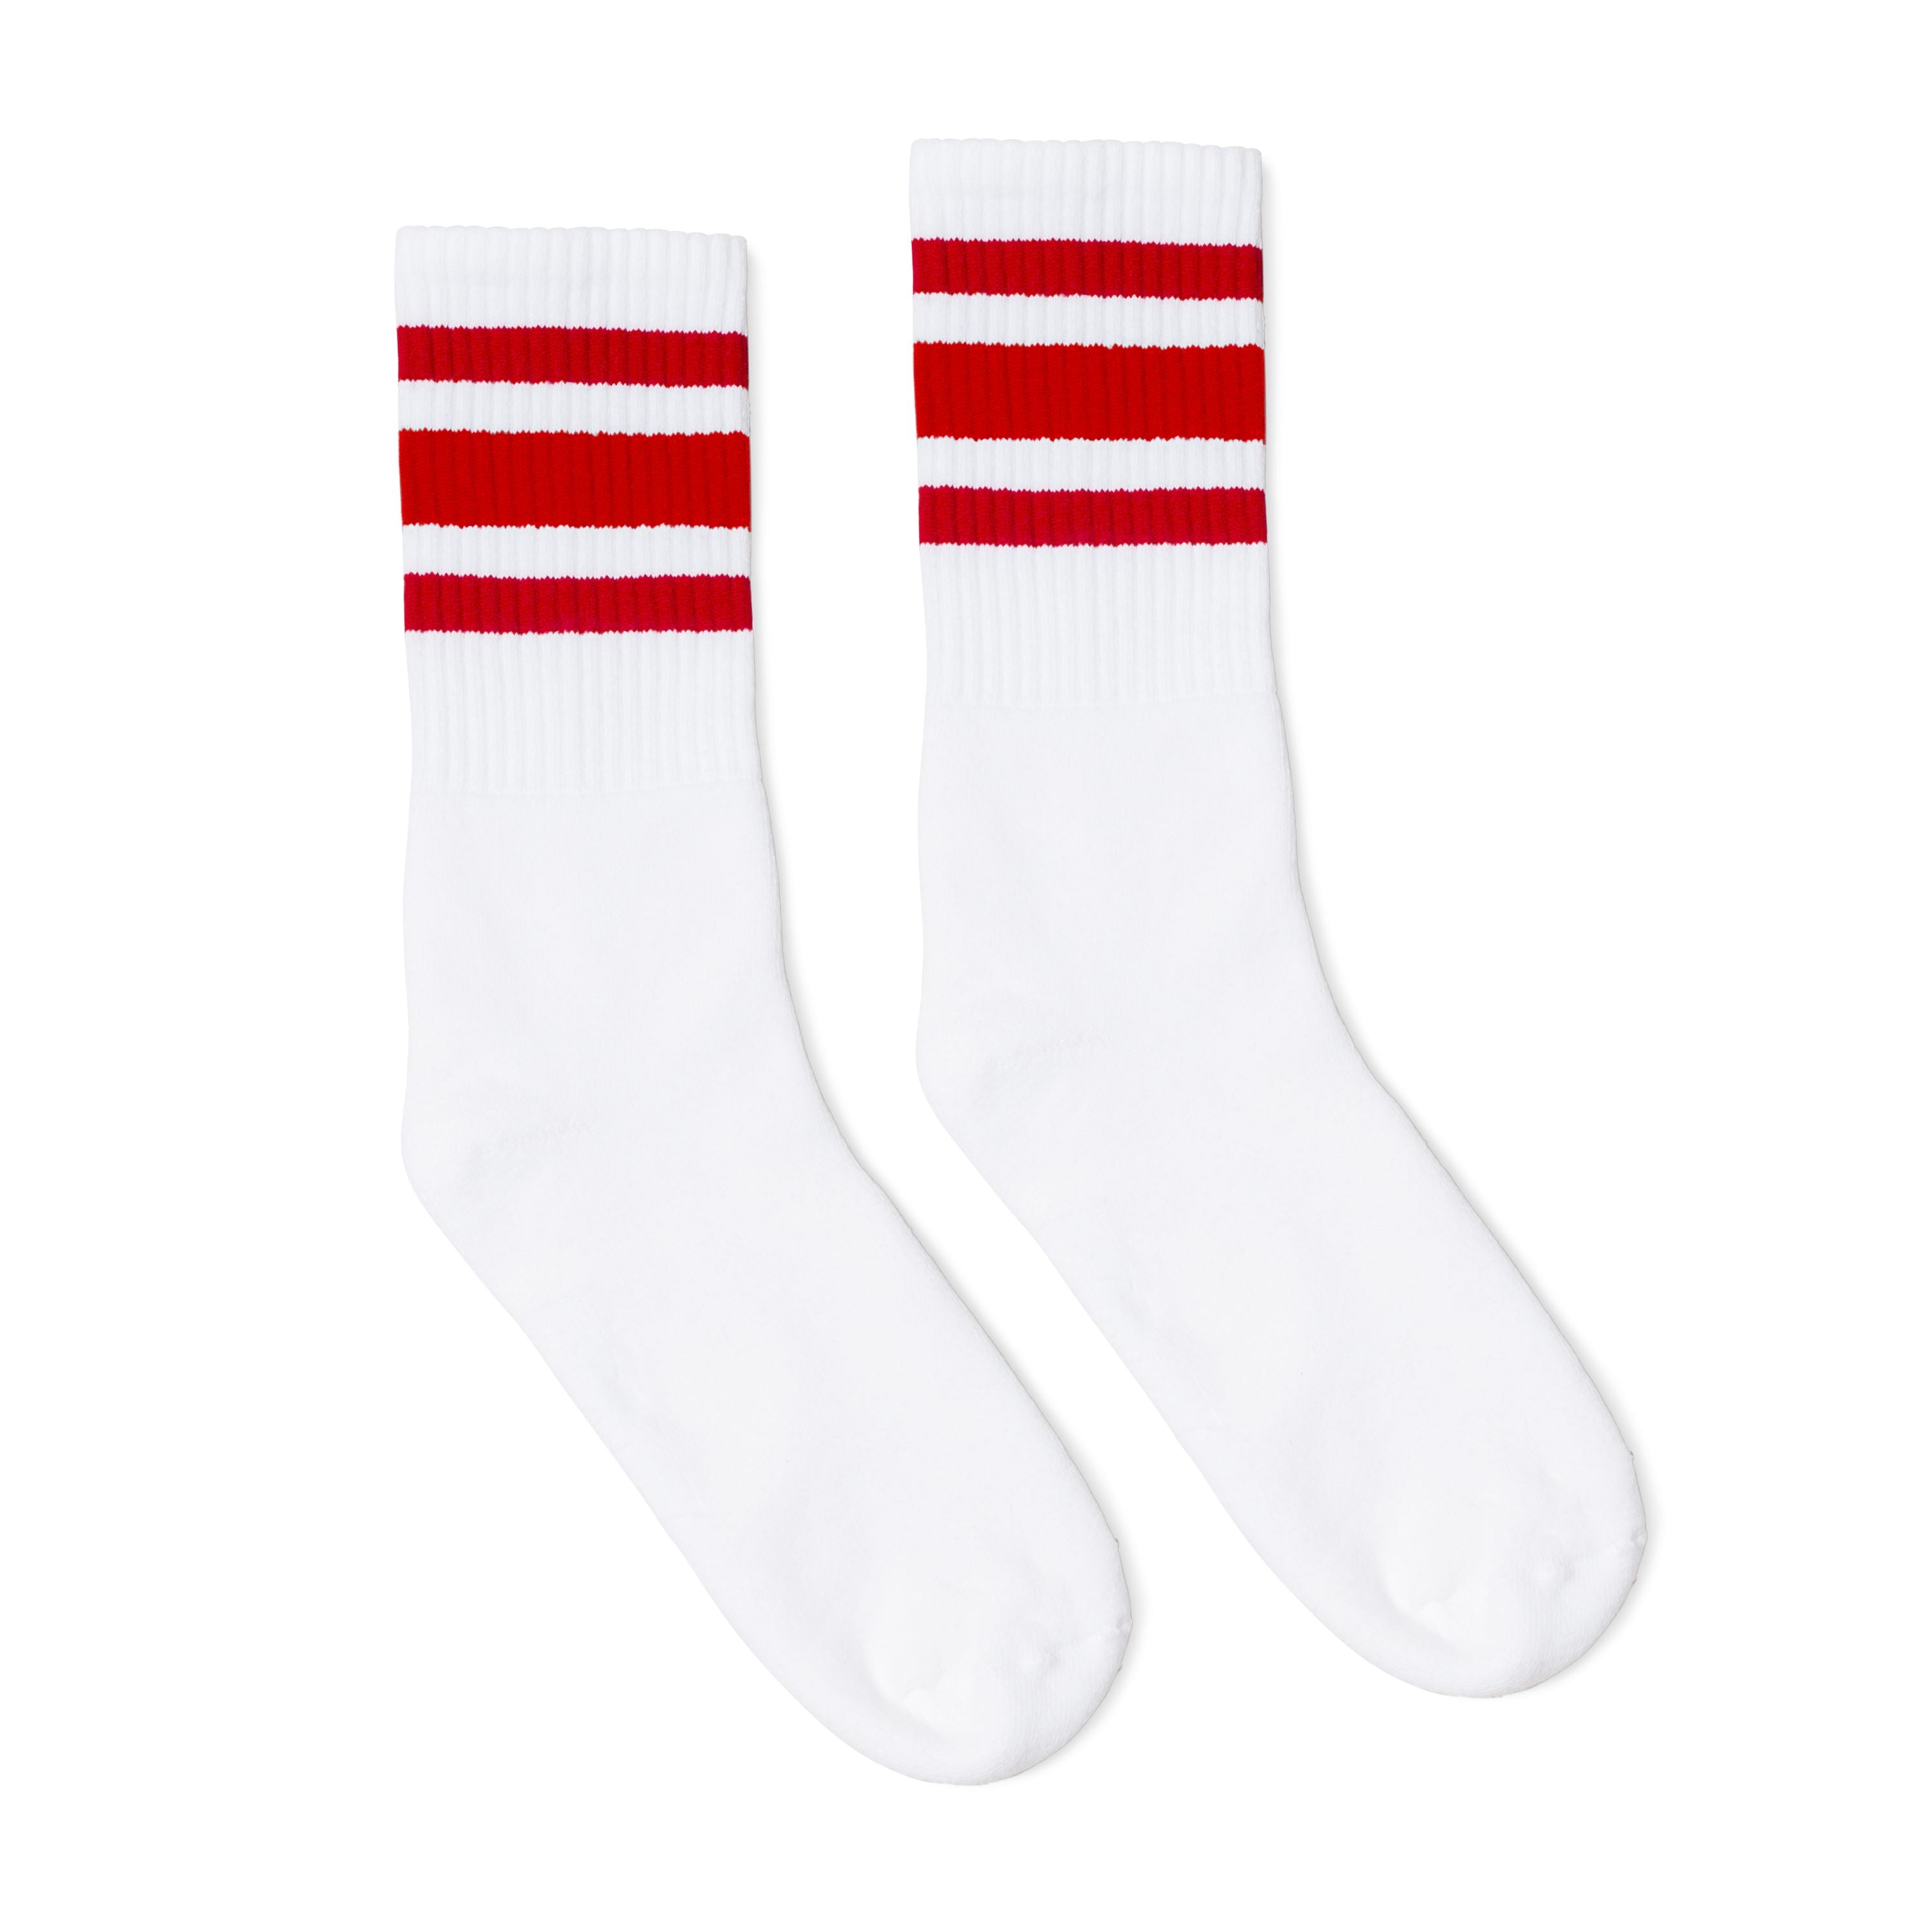 SOCCO Red Stripe Socks I Made –